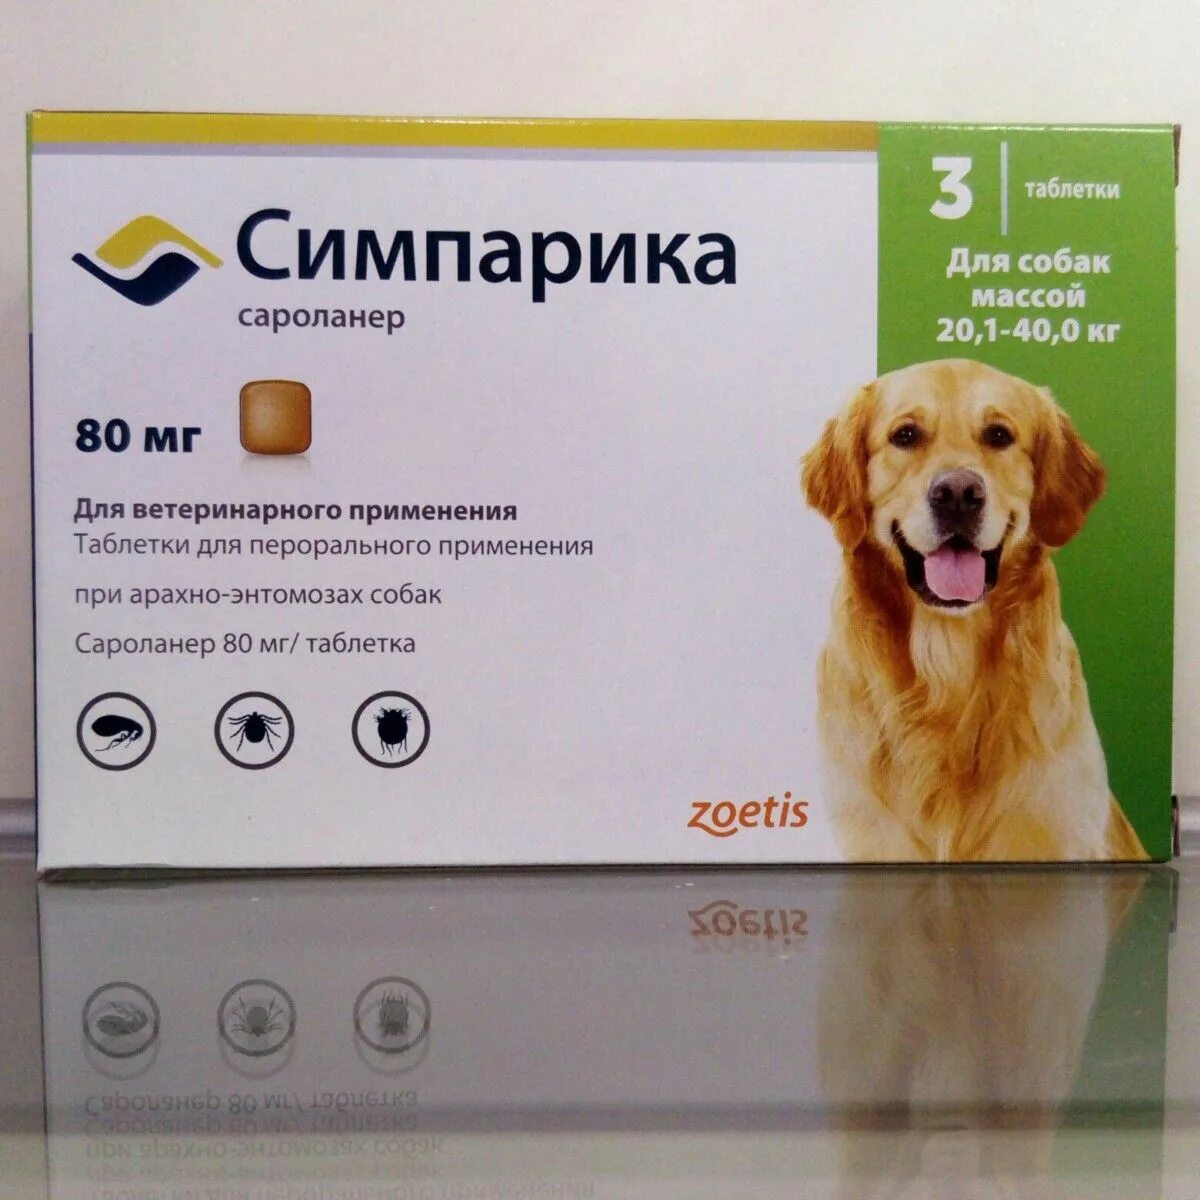 Лучшие средства от клещей для собак отзывы. Симпарика 2,5-5. Симпарика 20 мг. Симпарика таблетка 10-20 кг. Simparica Симпарика таблетки для собак.